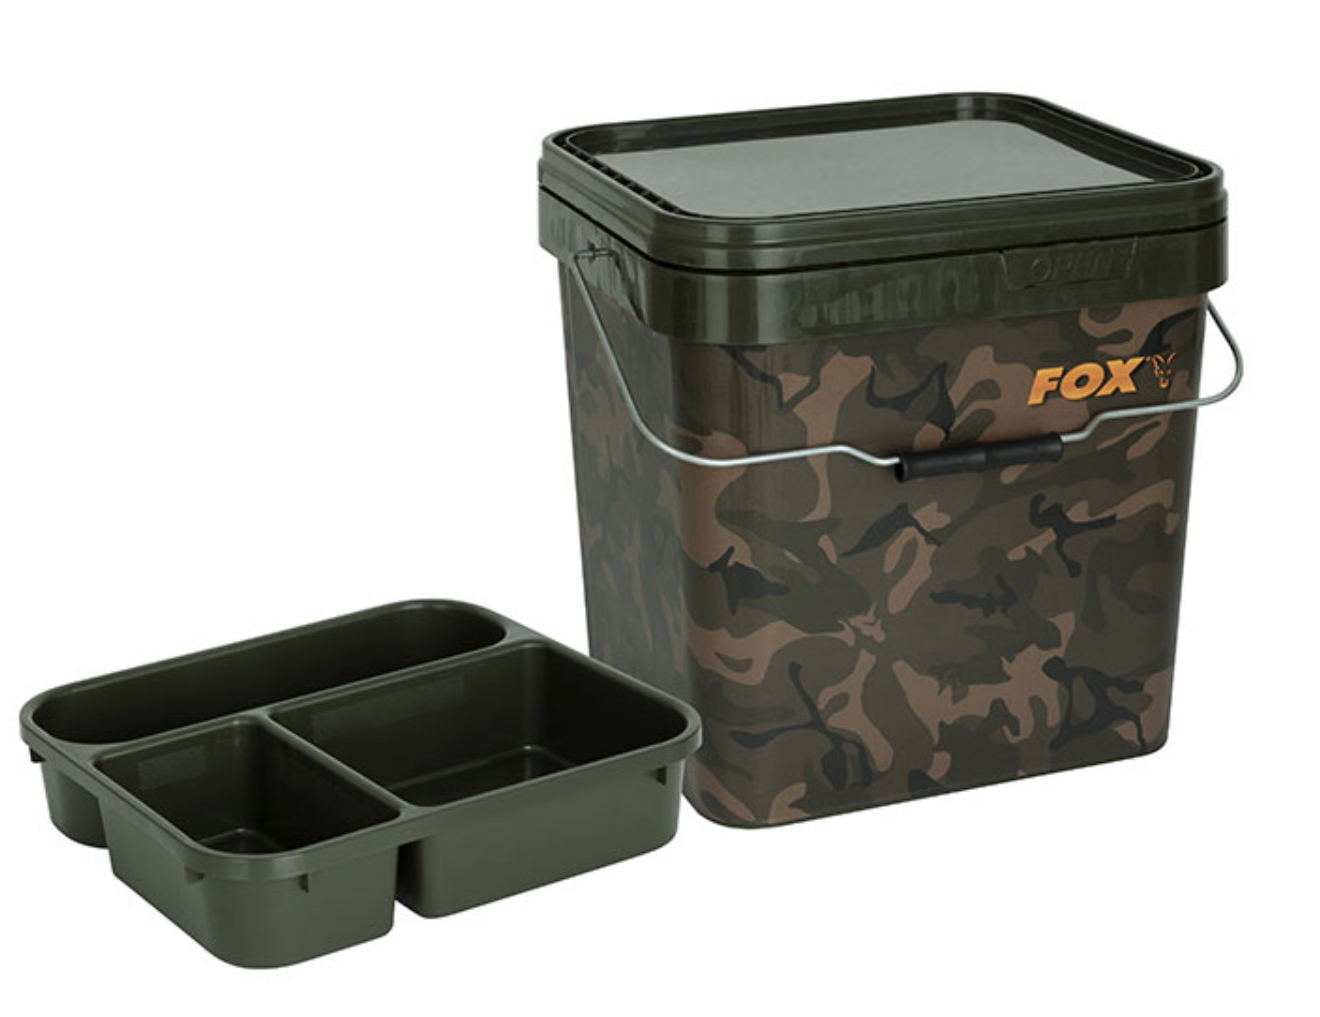 Fox Bucket Tray Insert